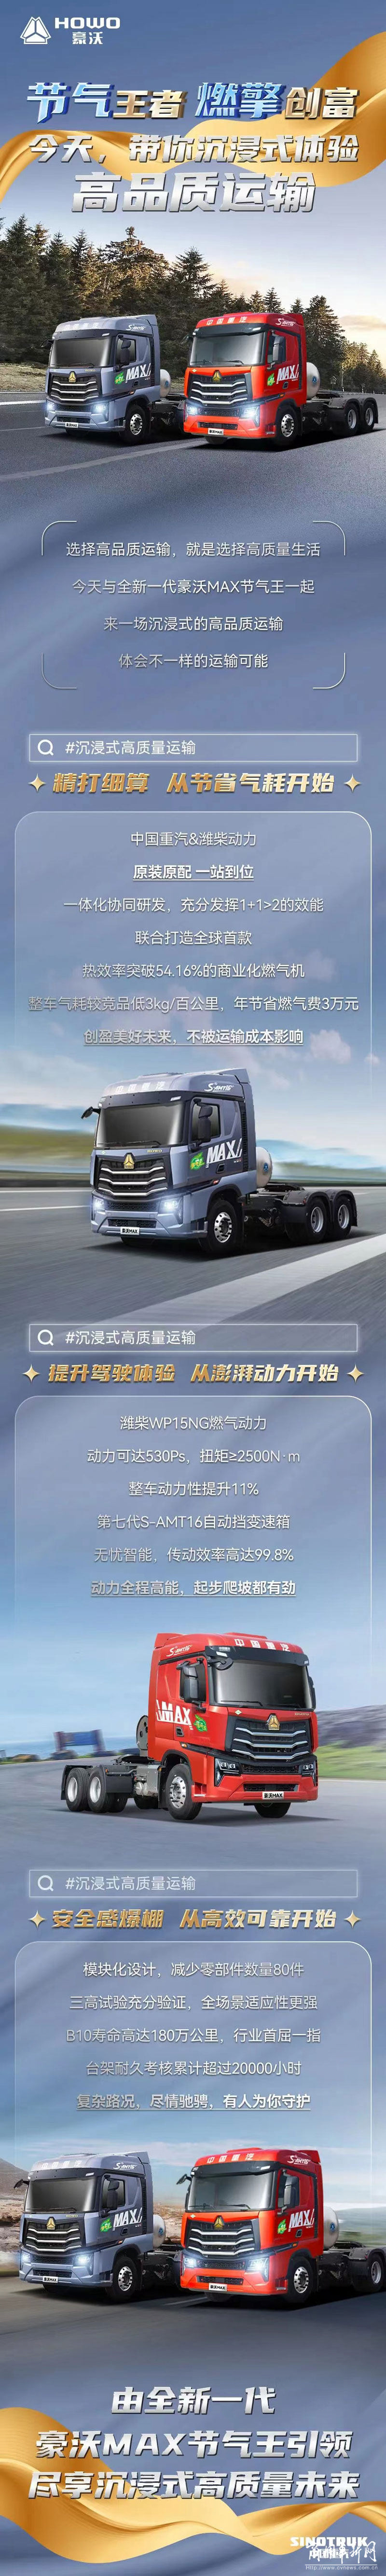 中国重汽全新一代豪沃MAX燃气车 带你沉浸式体验高品质运输